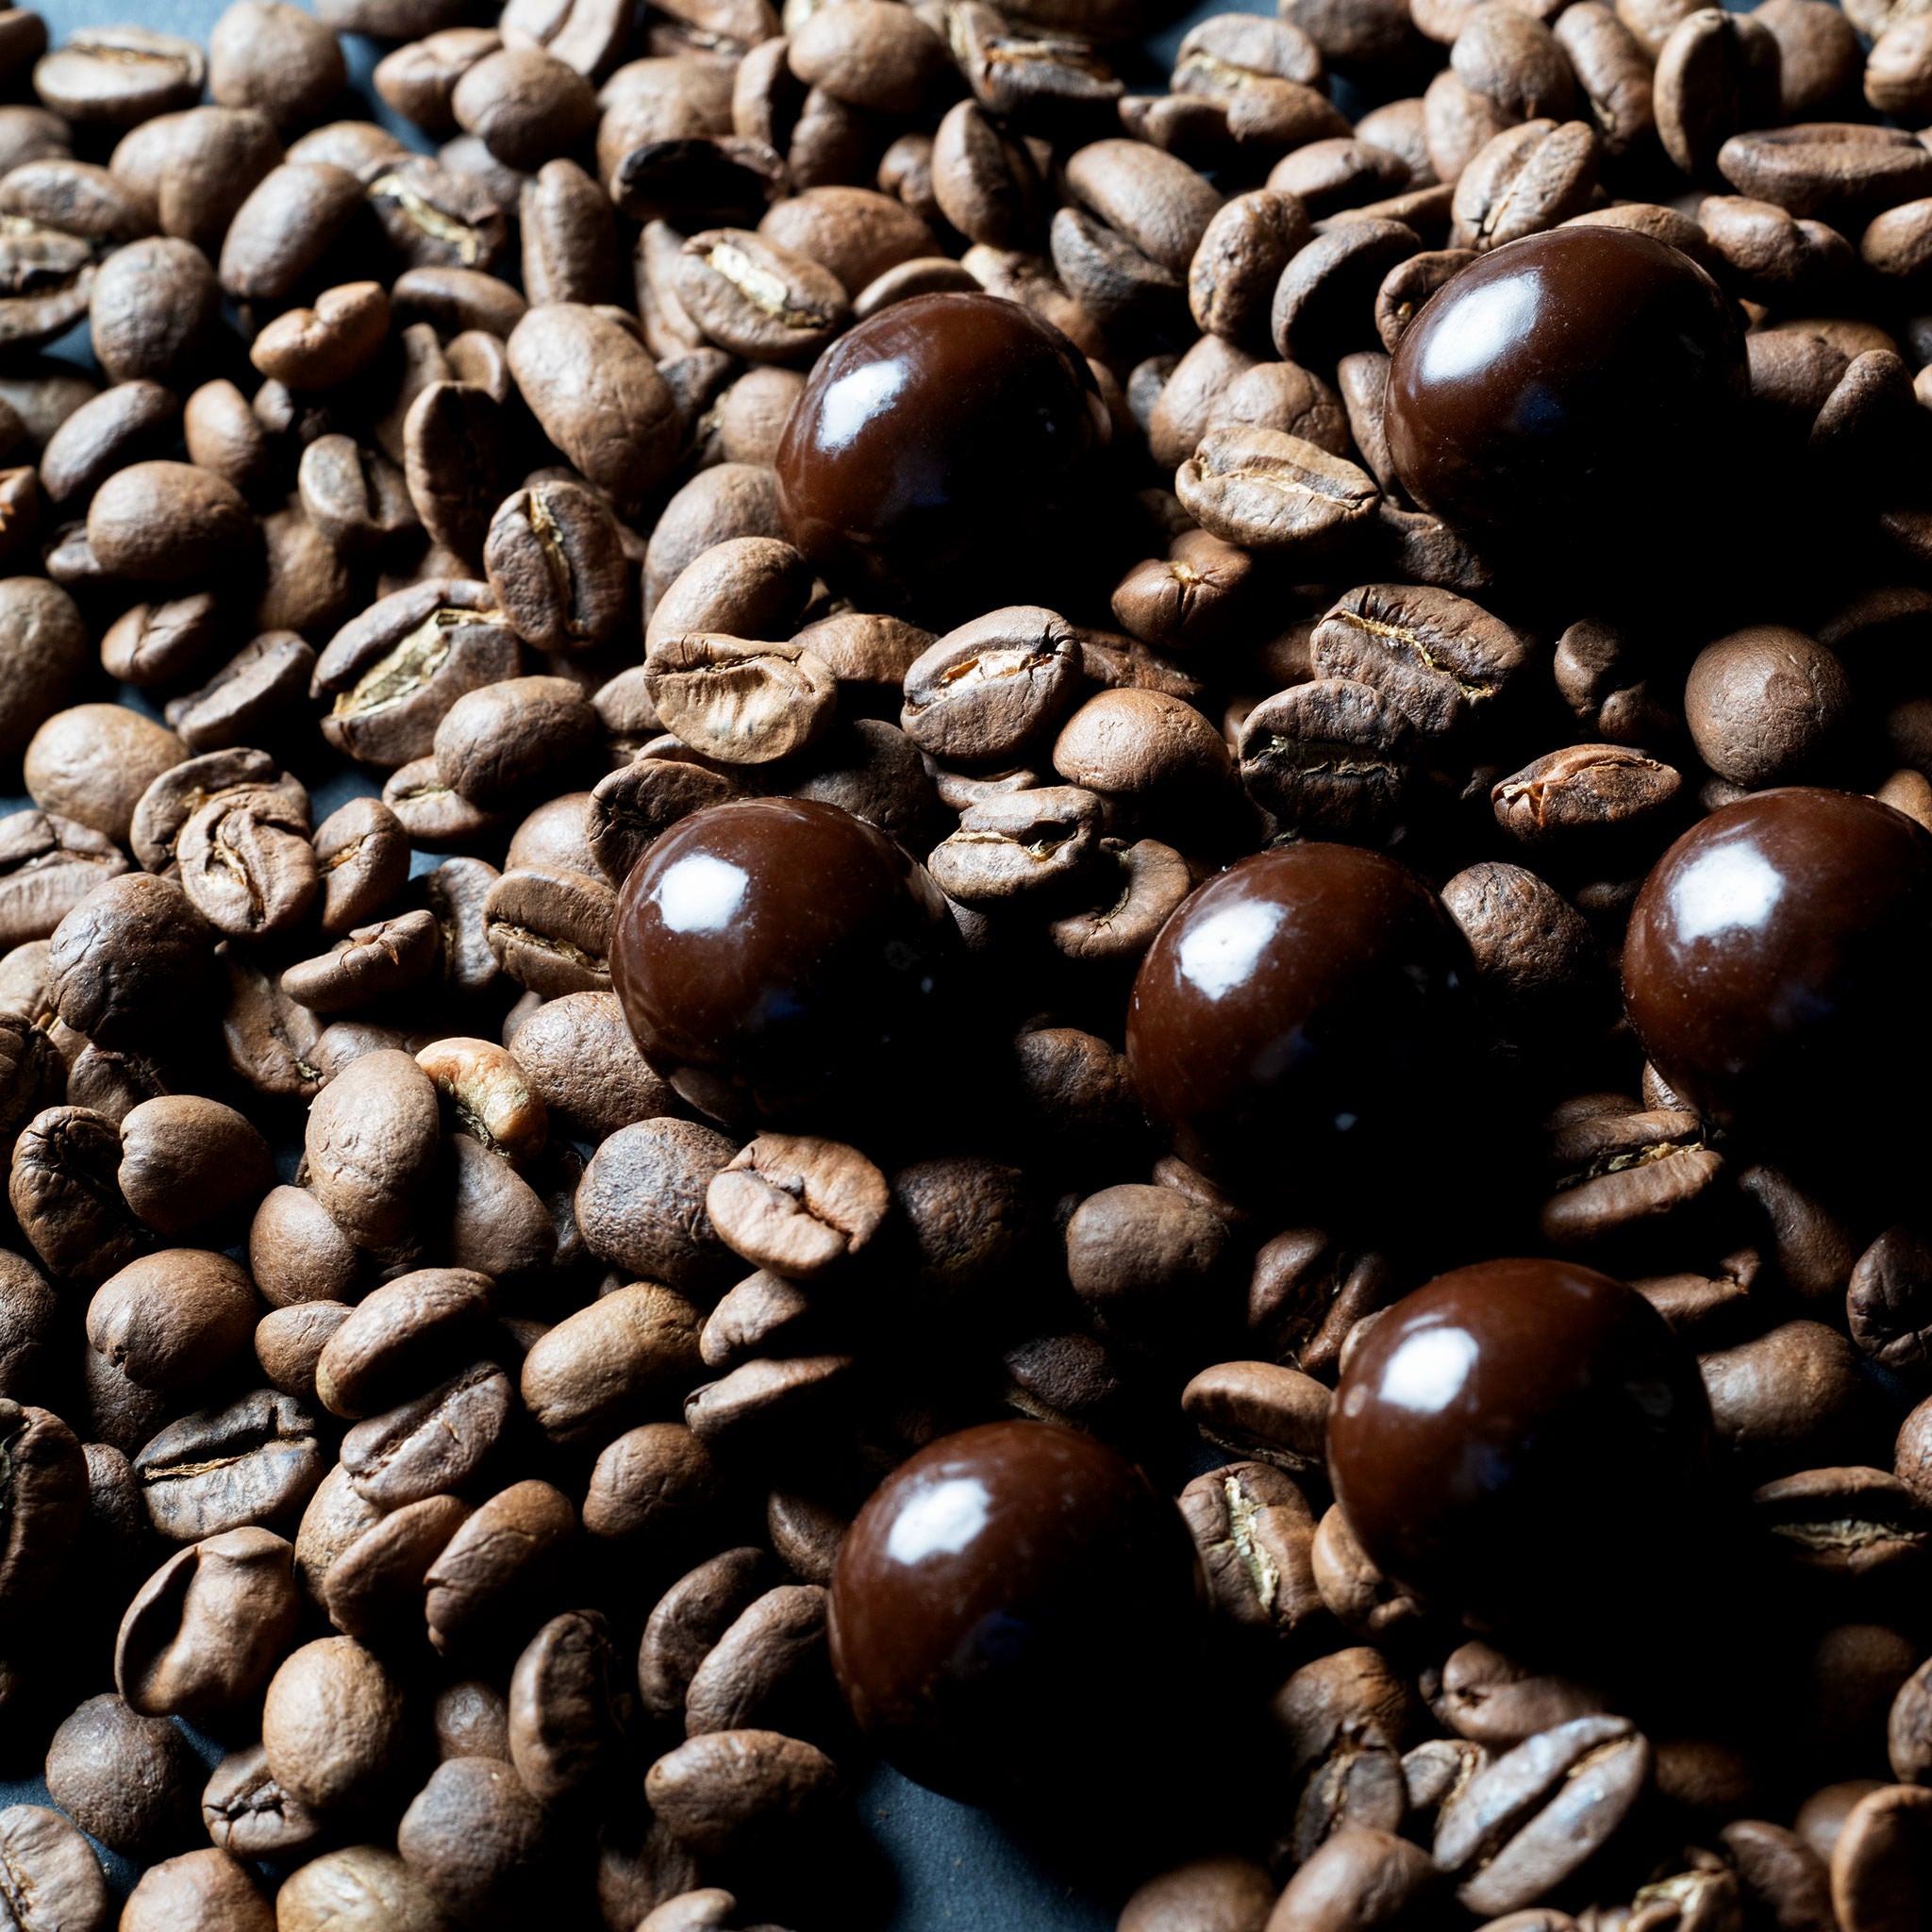 Hazelnut coffee